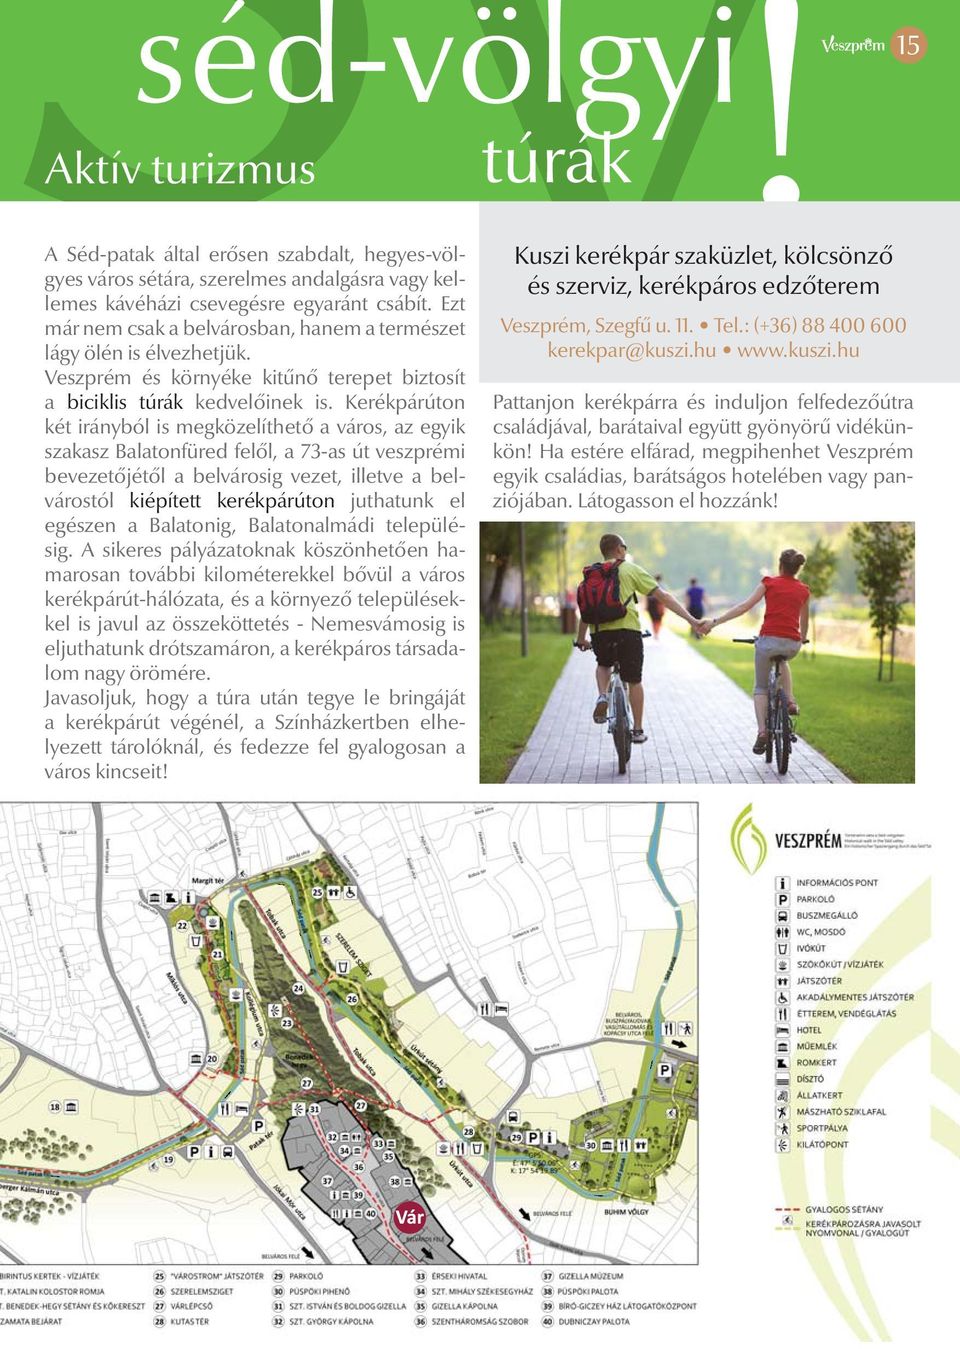 Kerékpárúton két irányból is megközelíthető a város, az egyik szakasz Balatonfüred felől, a 73-as út veszprémi bevezetőjétől a belvárosig vezet, illetve a belvárostól kiépített kerékpárúton juthatunk